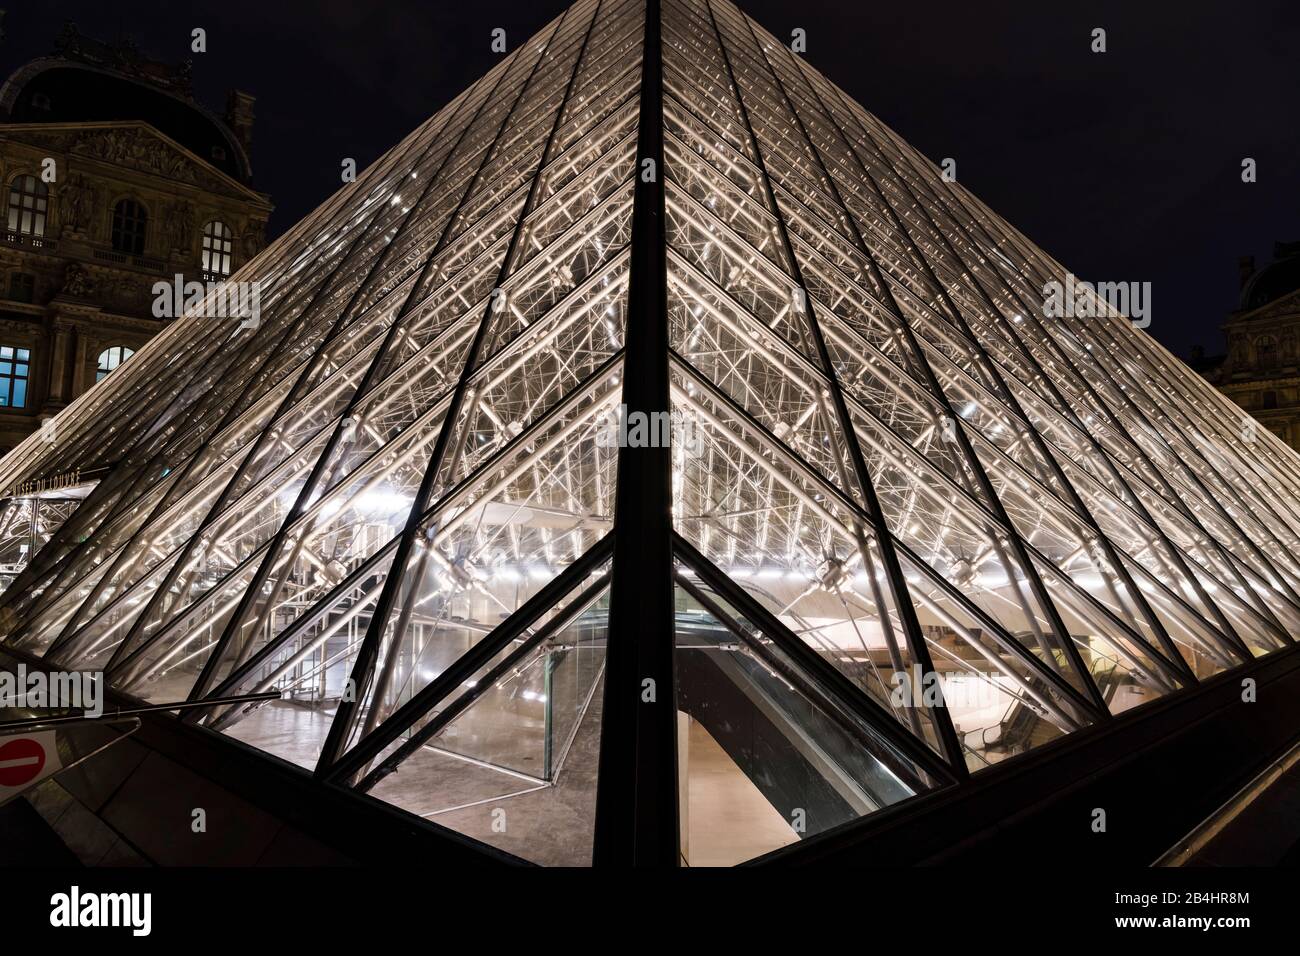 Pyramide de verre éclairée la nuit au Louvre, Paris, France, Europe Banque D'Images